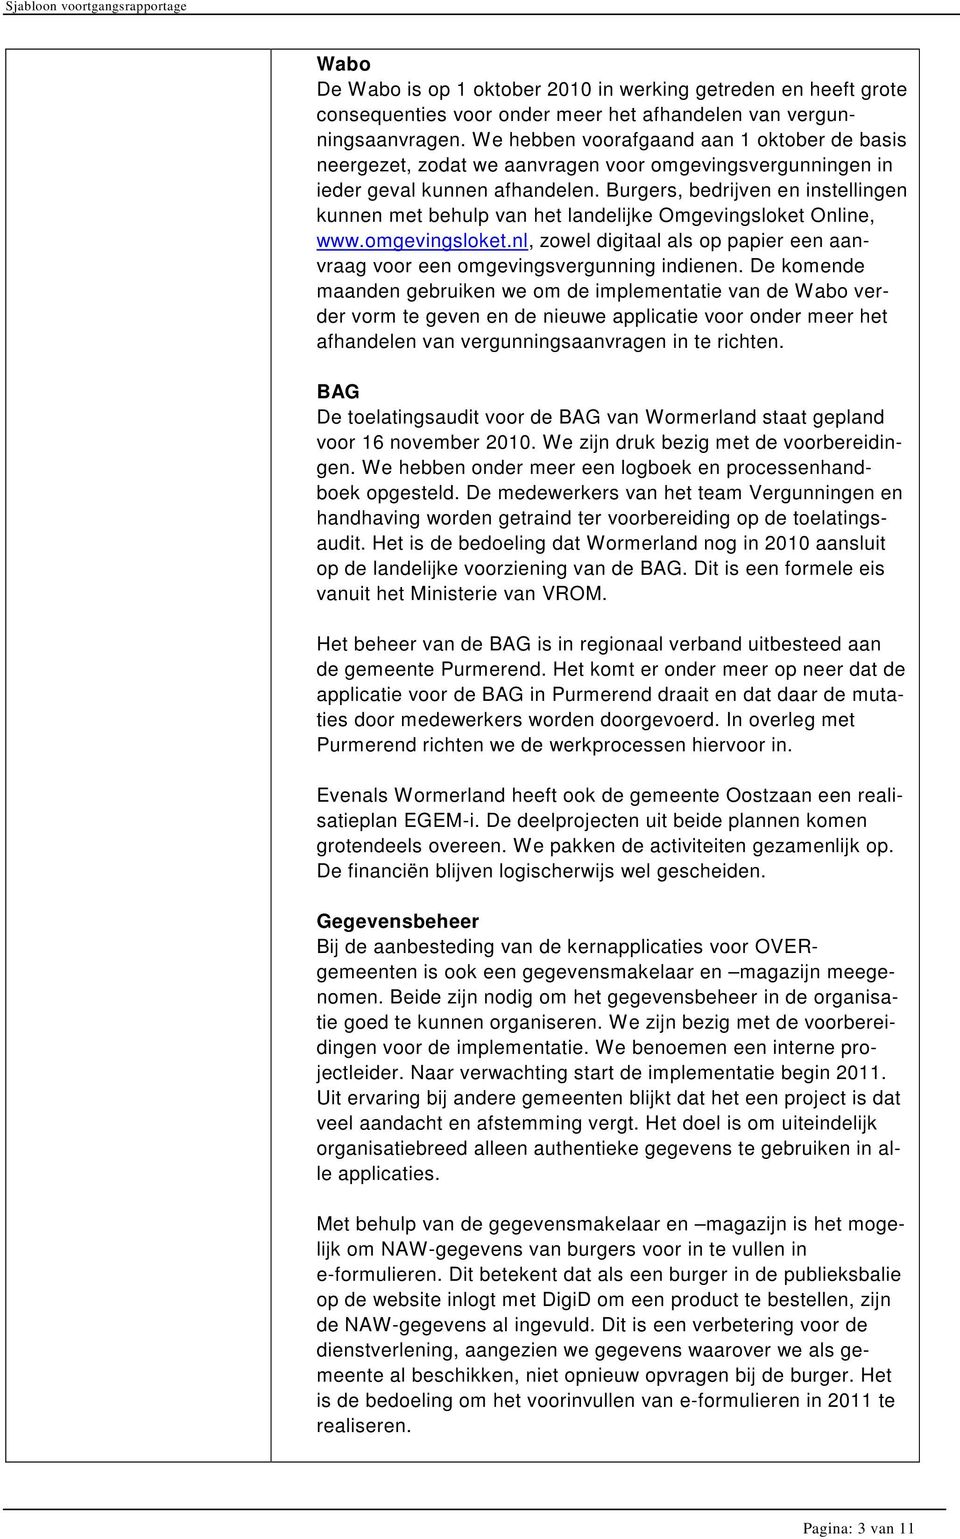 Burgers, bedrijven en instellingen kunnen met behulp van het landelijke Omgevingsloket Online, www.omgevingsloket.nl, zowel digitaal als op papier een aanvraag voor een omgevingsvergunning indienen.